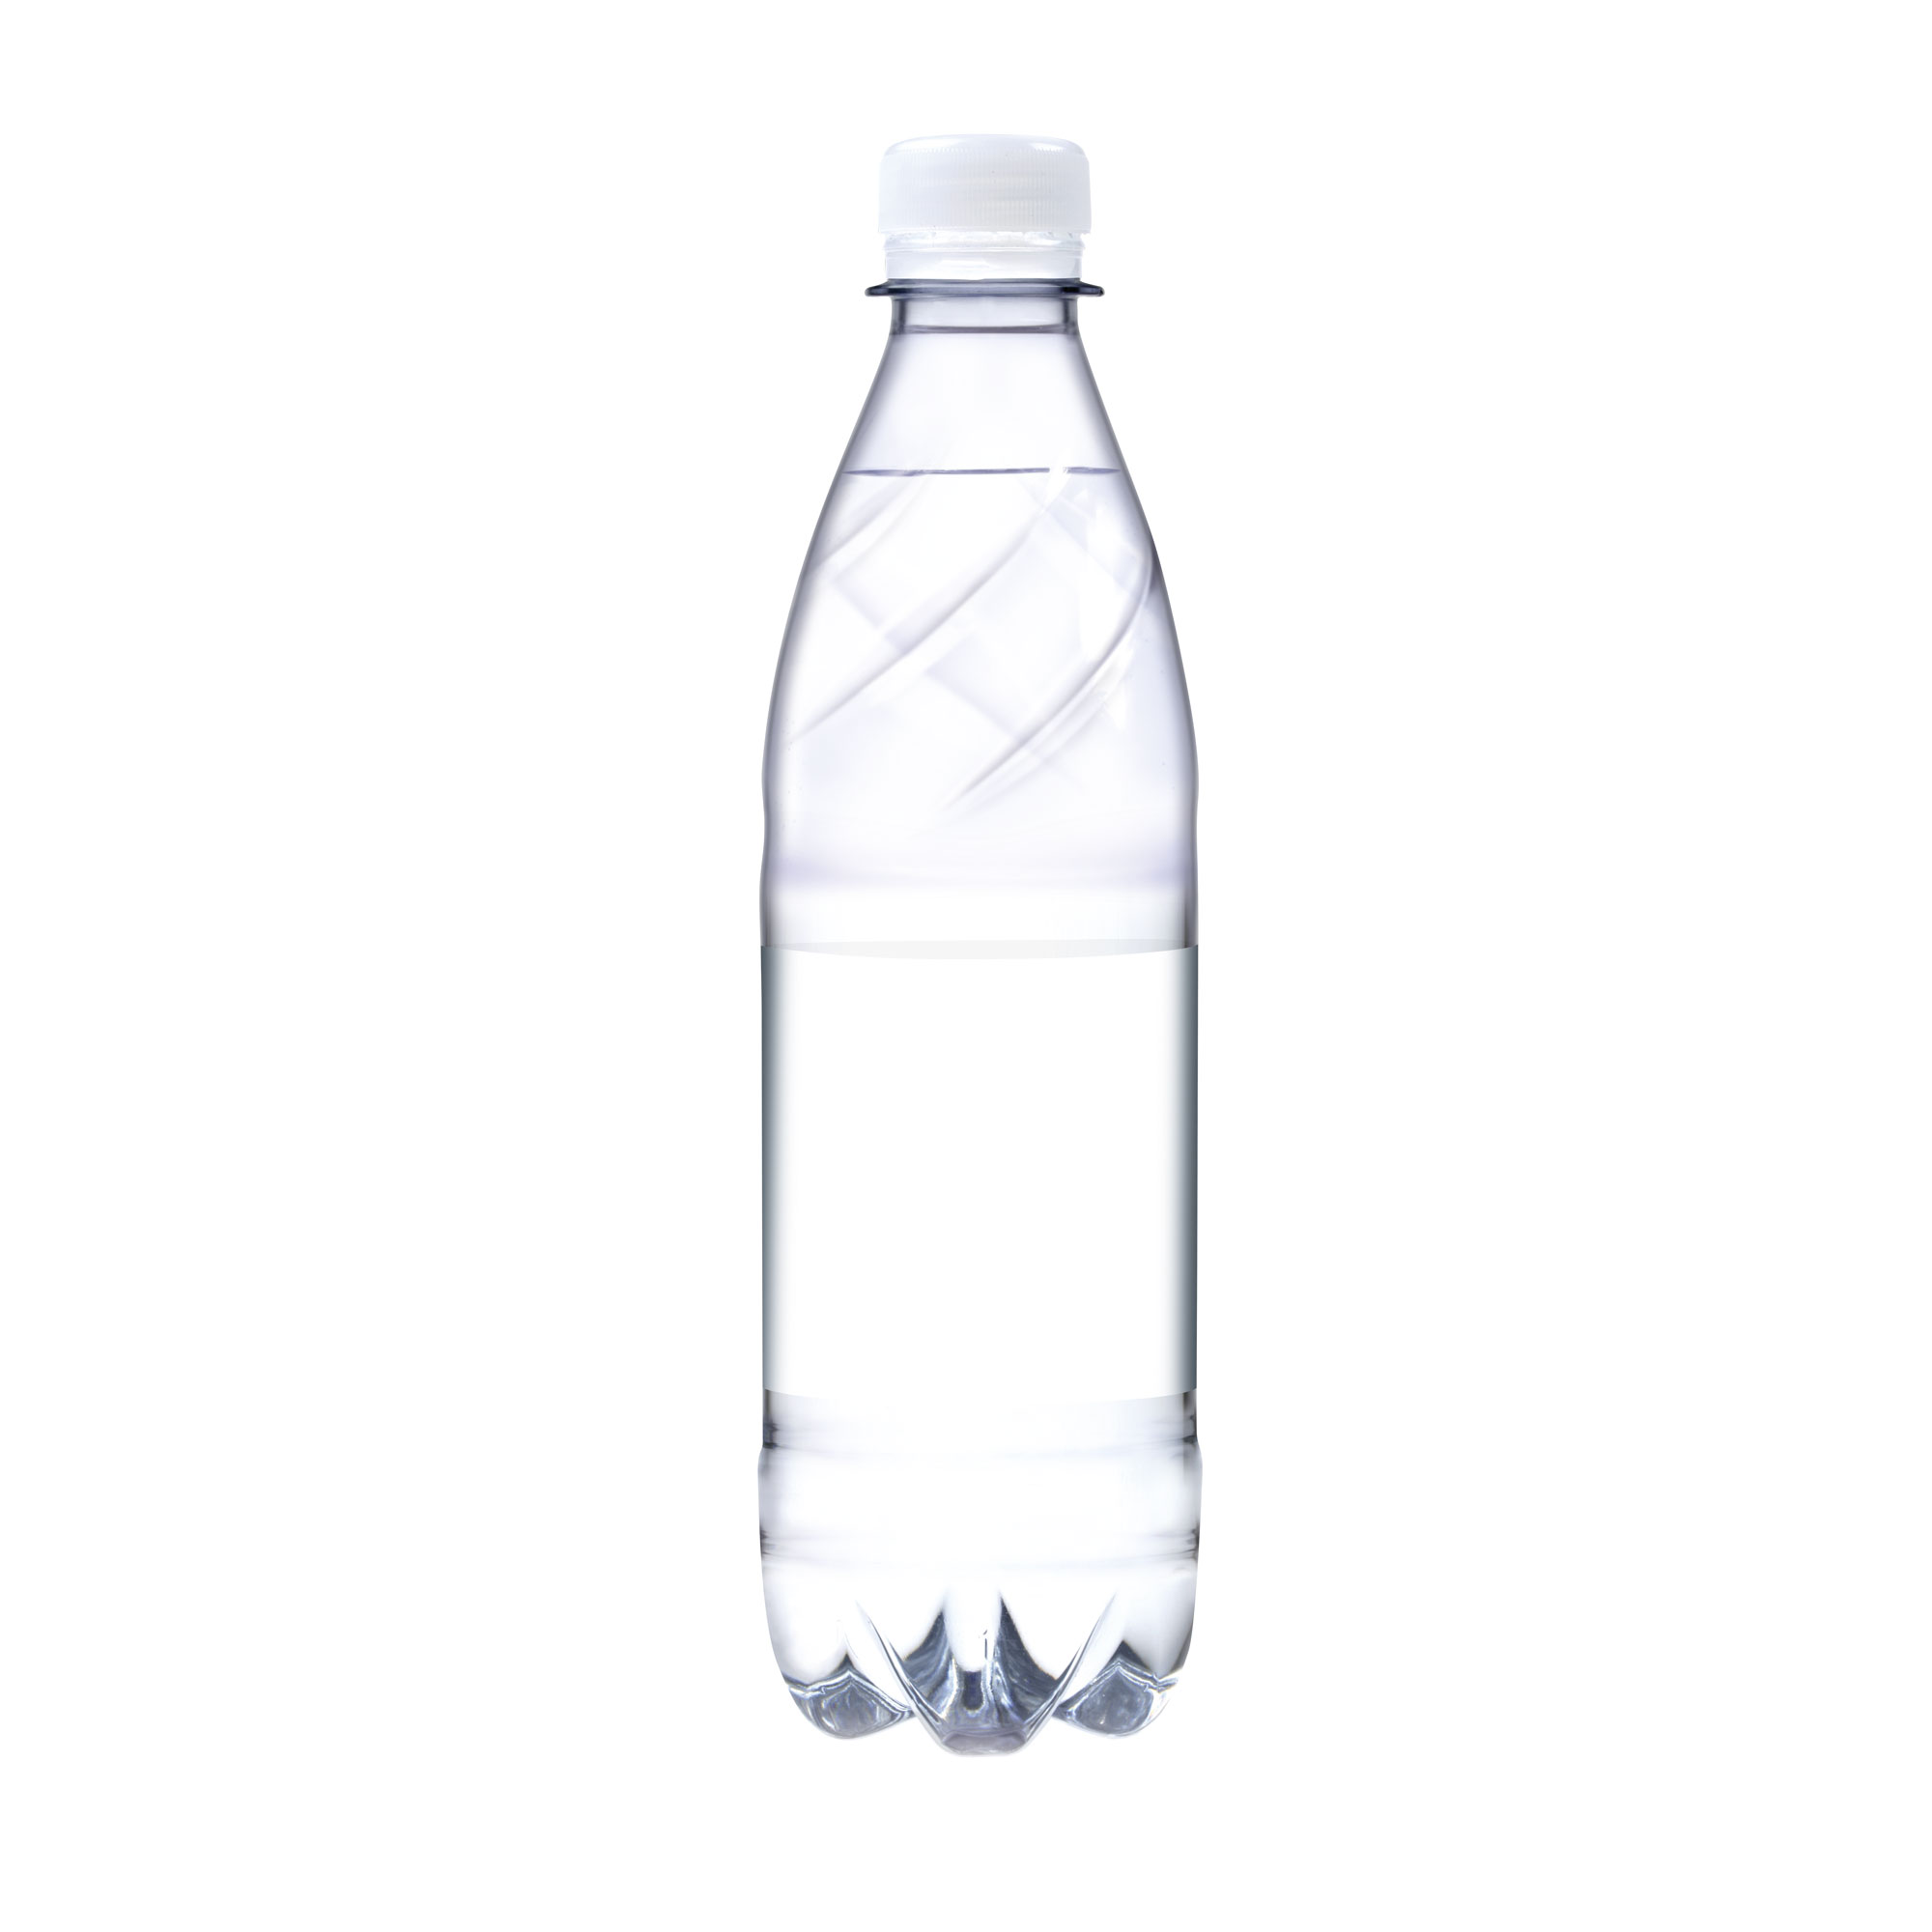 500 ml Tafelwasser spritzig (Flasche Budget) - Smart Label